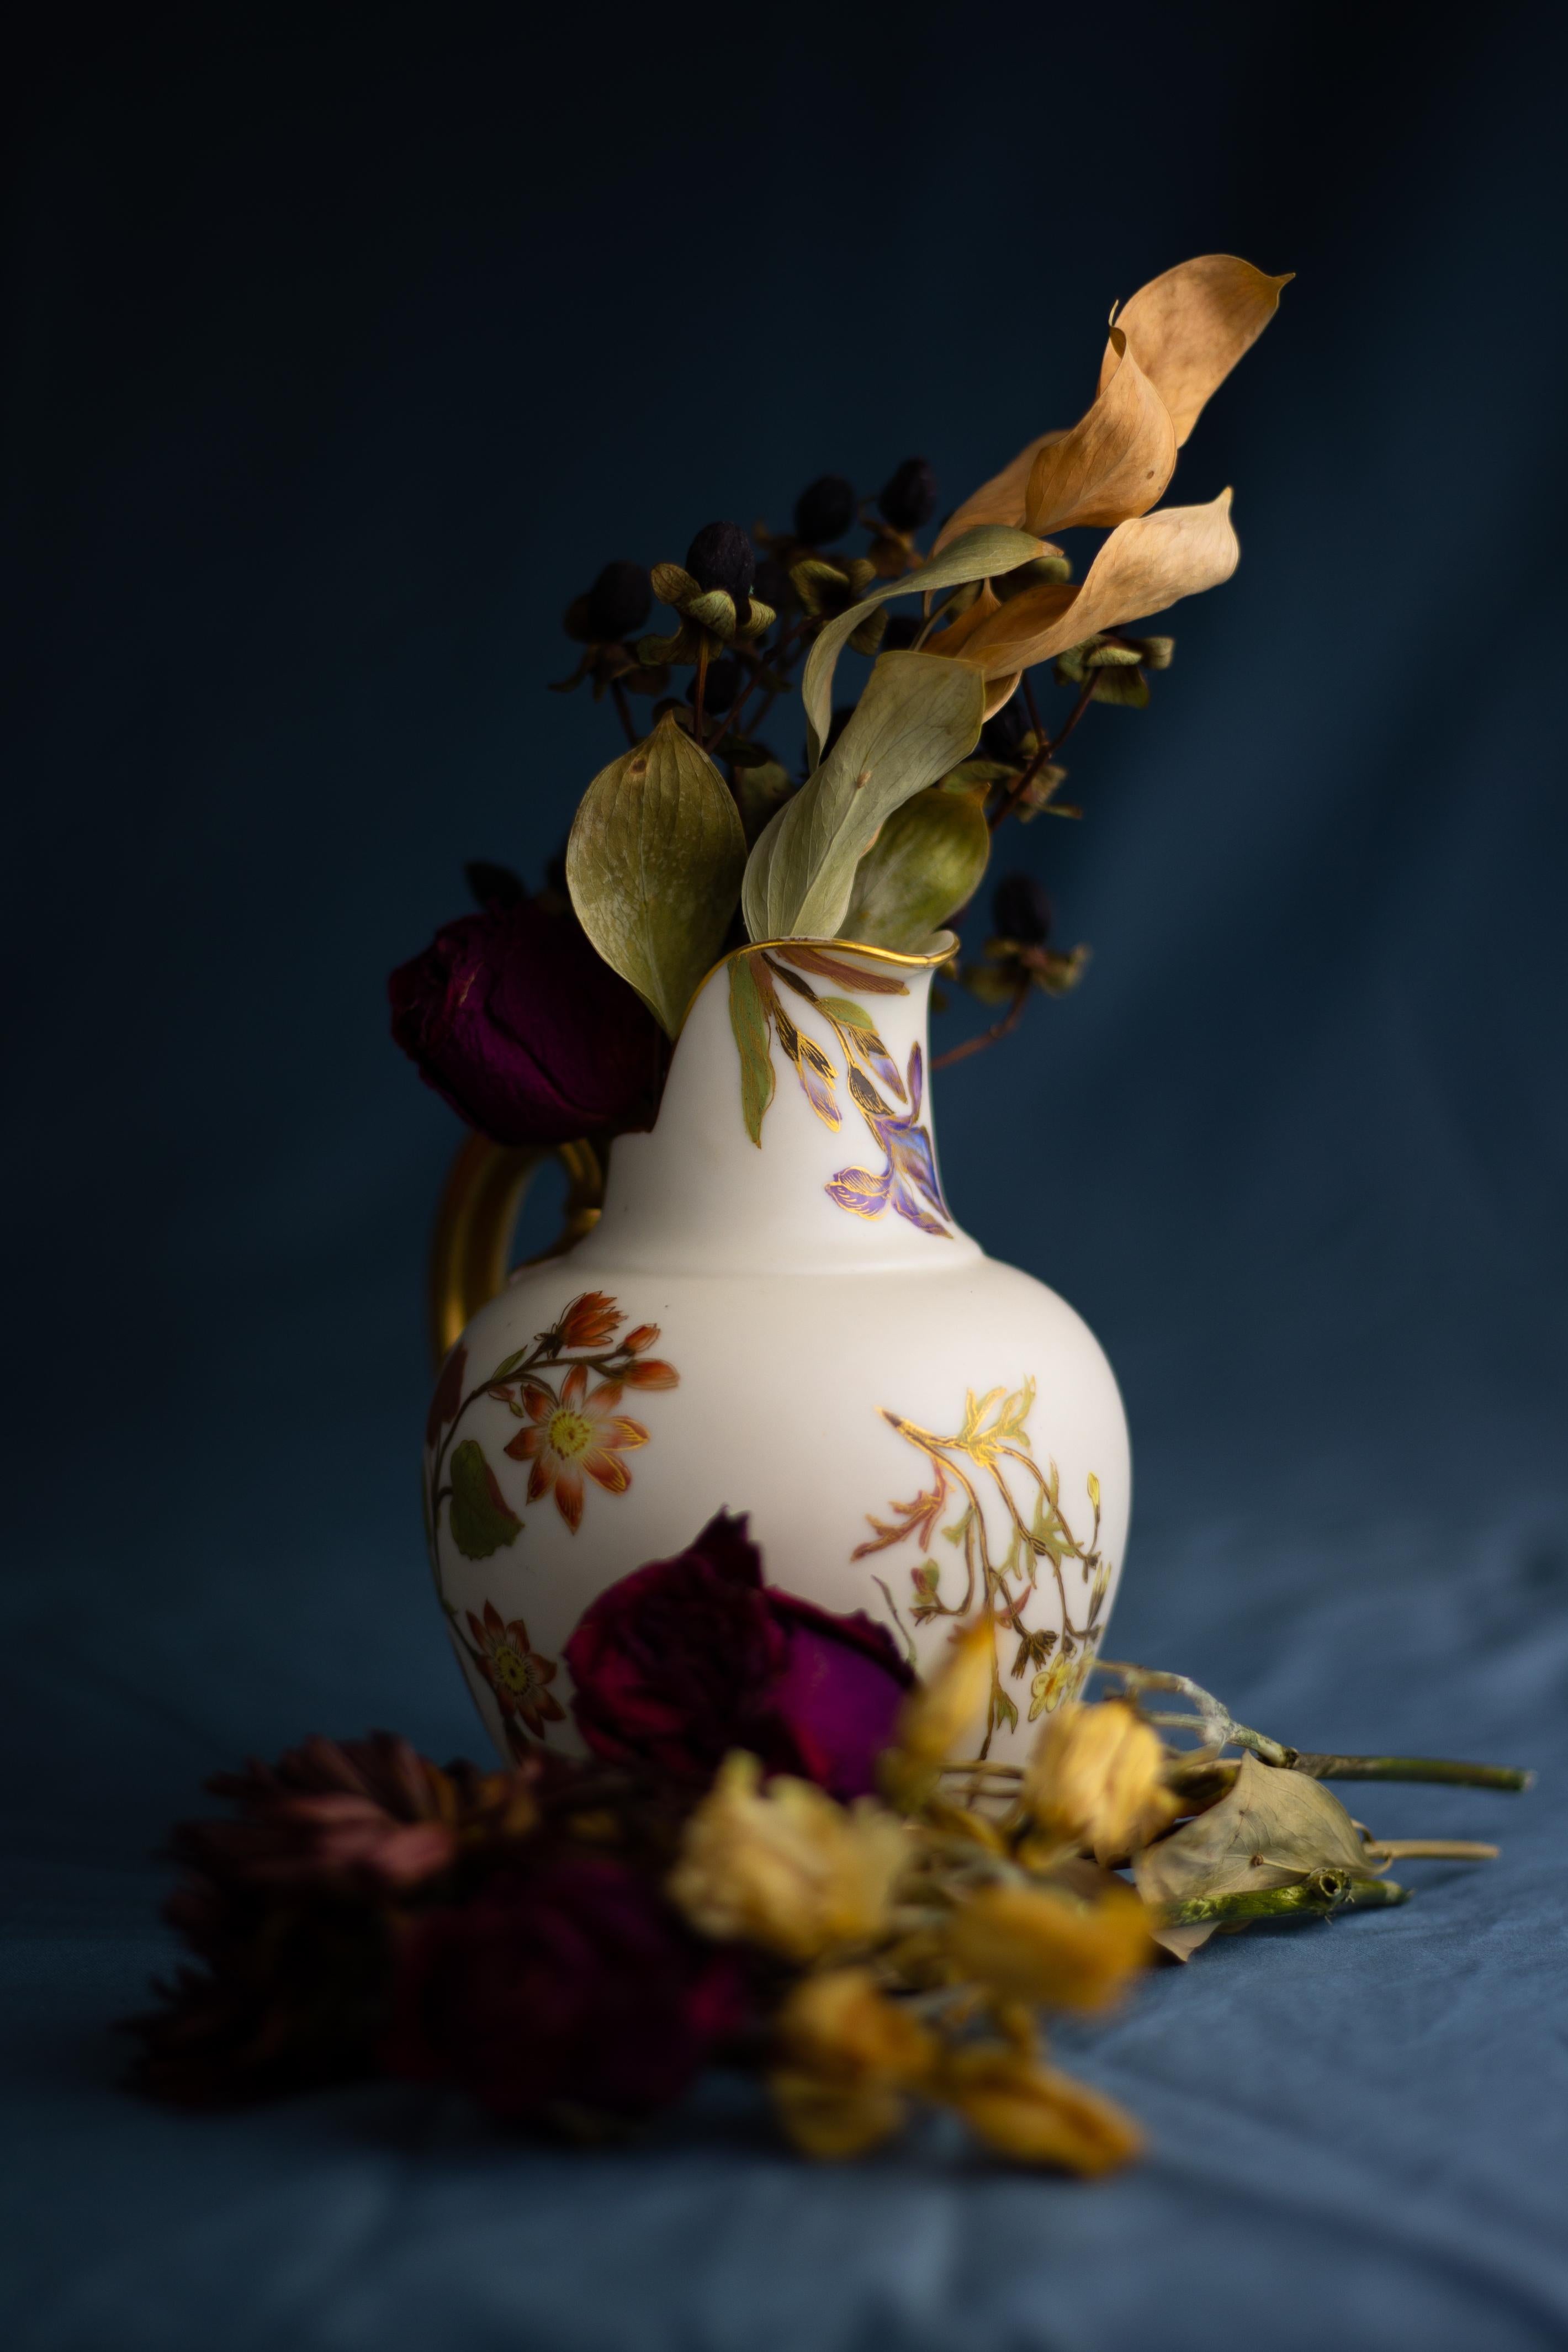 Ein schöner Krug aus errötetem Porzellan im Aesthetic-Stil, hergestellt von Royal Worcester im Jahr 1890.

Dieser kleine Krug ist mit handgemalten Blumen im naturalistischen Japonisme-Stil verziert, einem Stil, der für die Ästhetische Bewegung